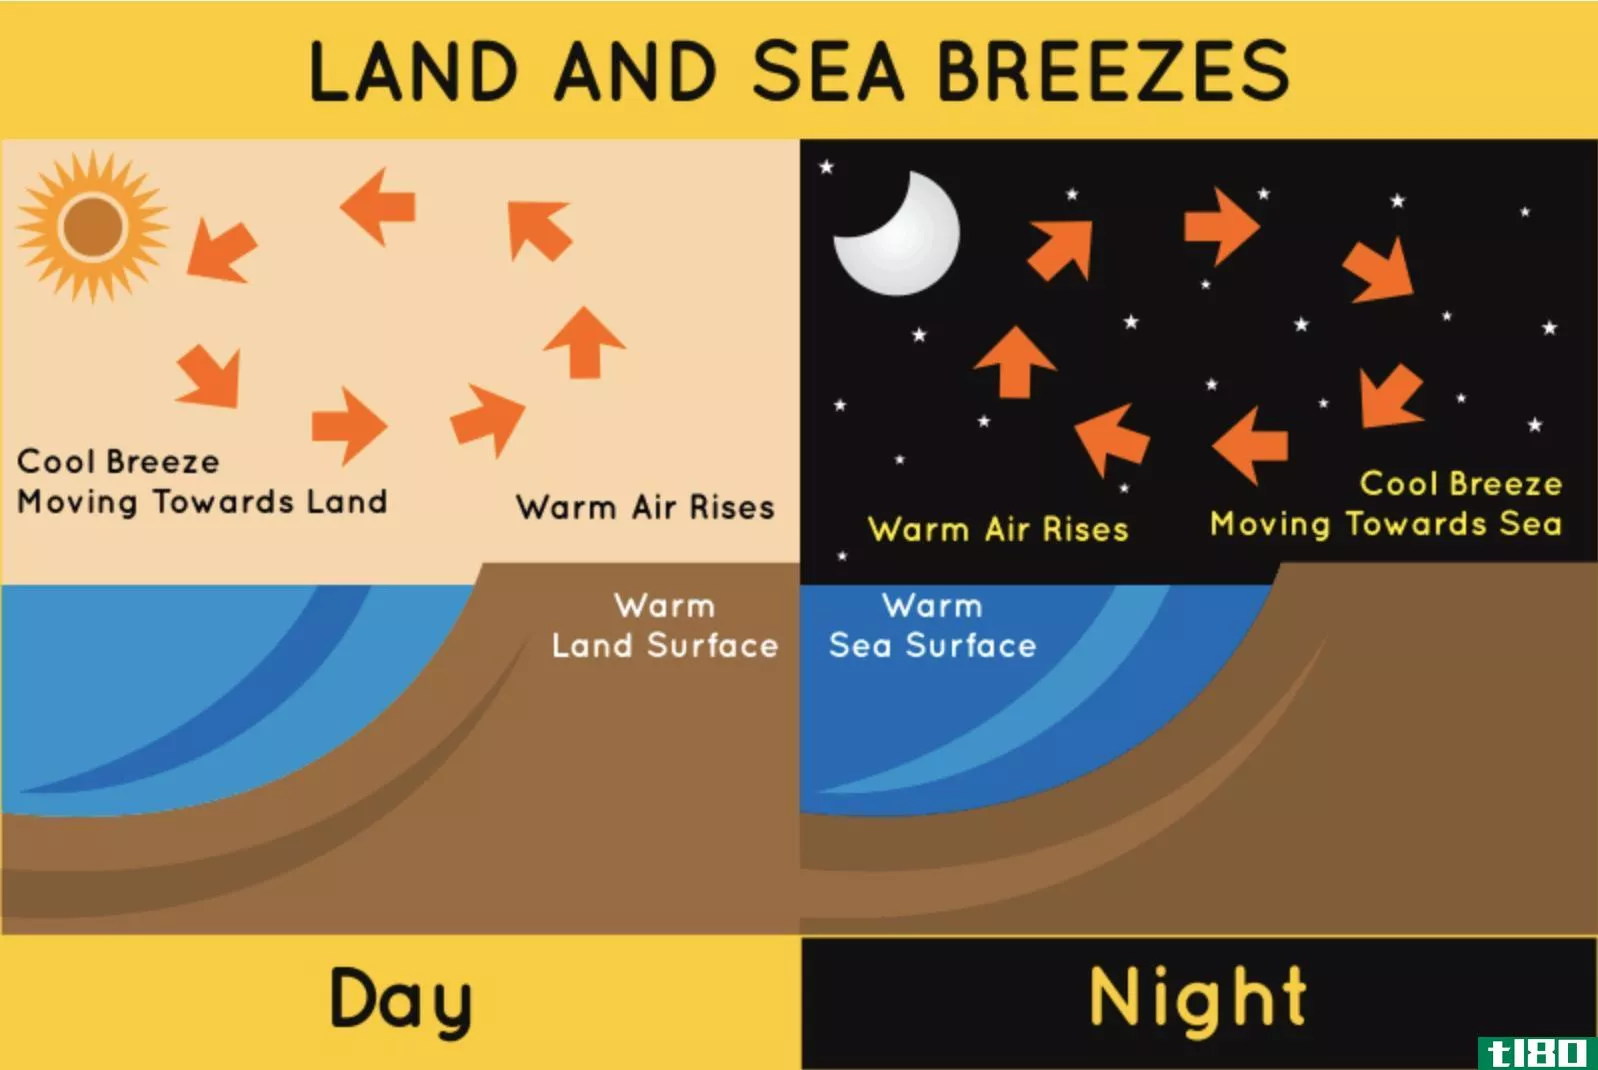 陆地风(land breeze)和海风(sea breeze)的区别